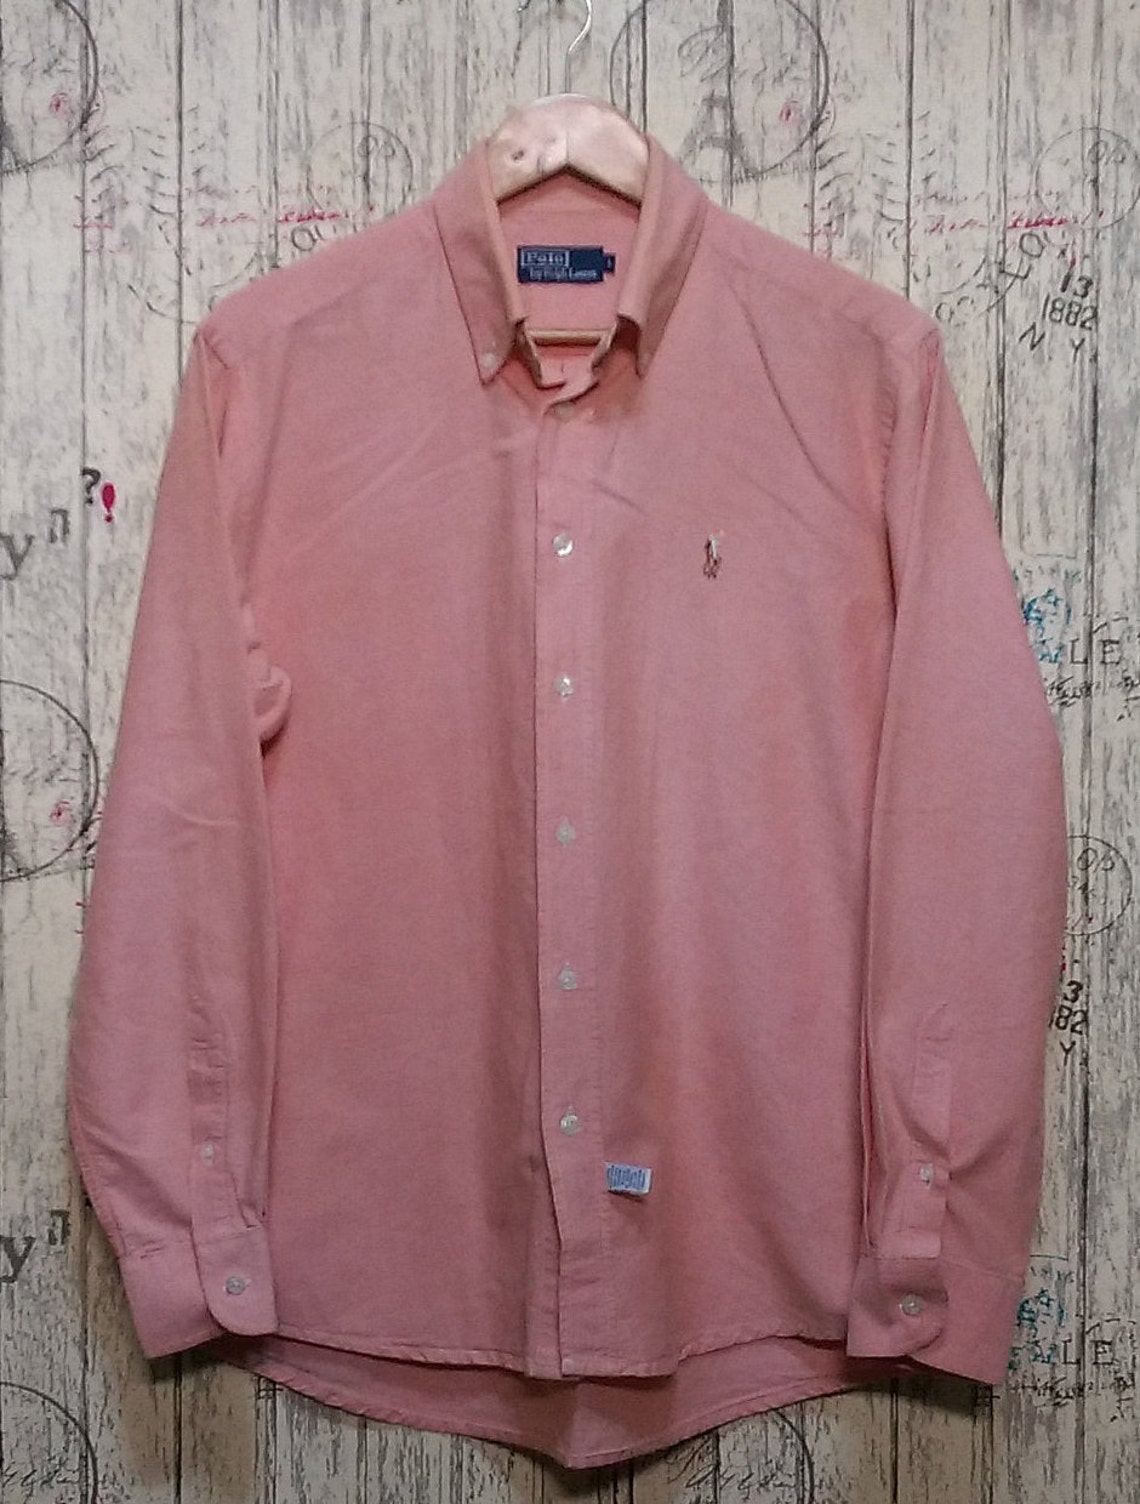 Vintage Polo Ralph Lauren blouse shirt Men's / Ralph | Etsy